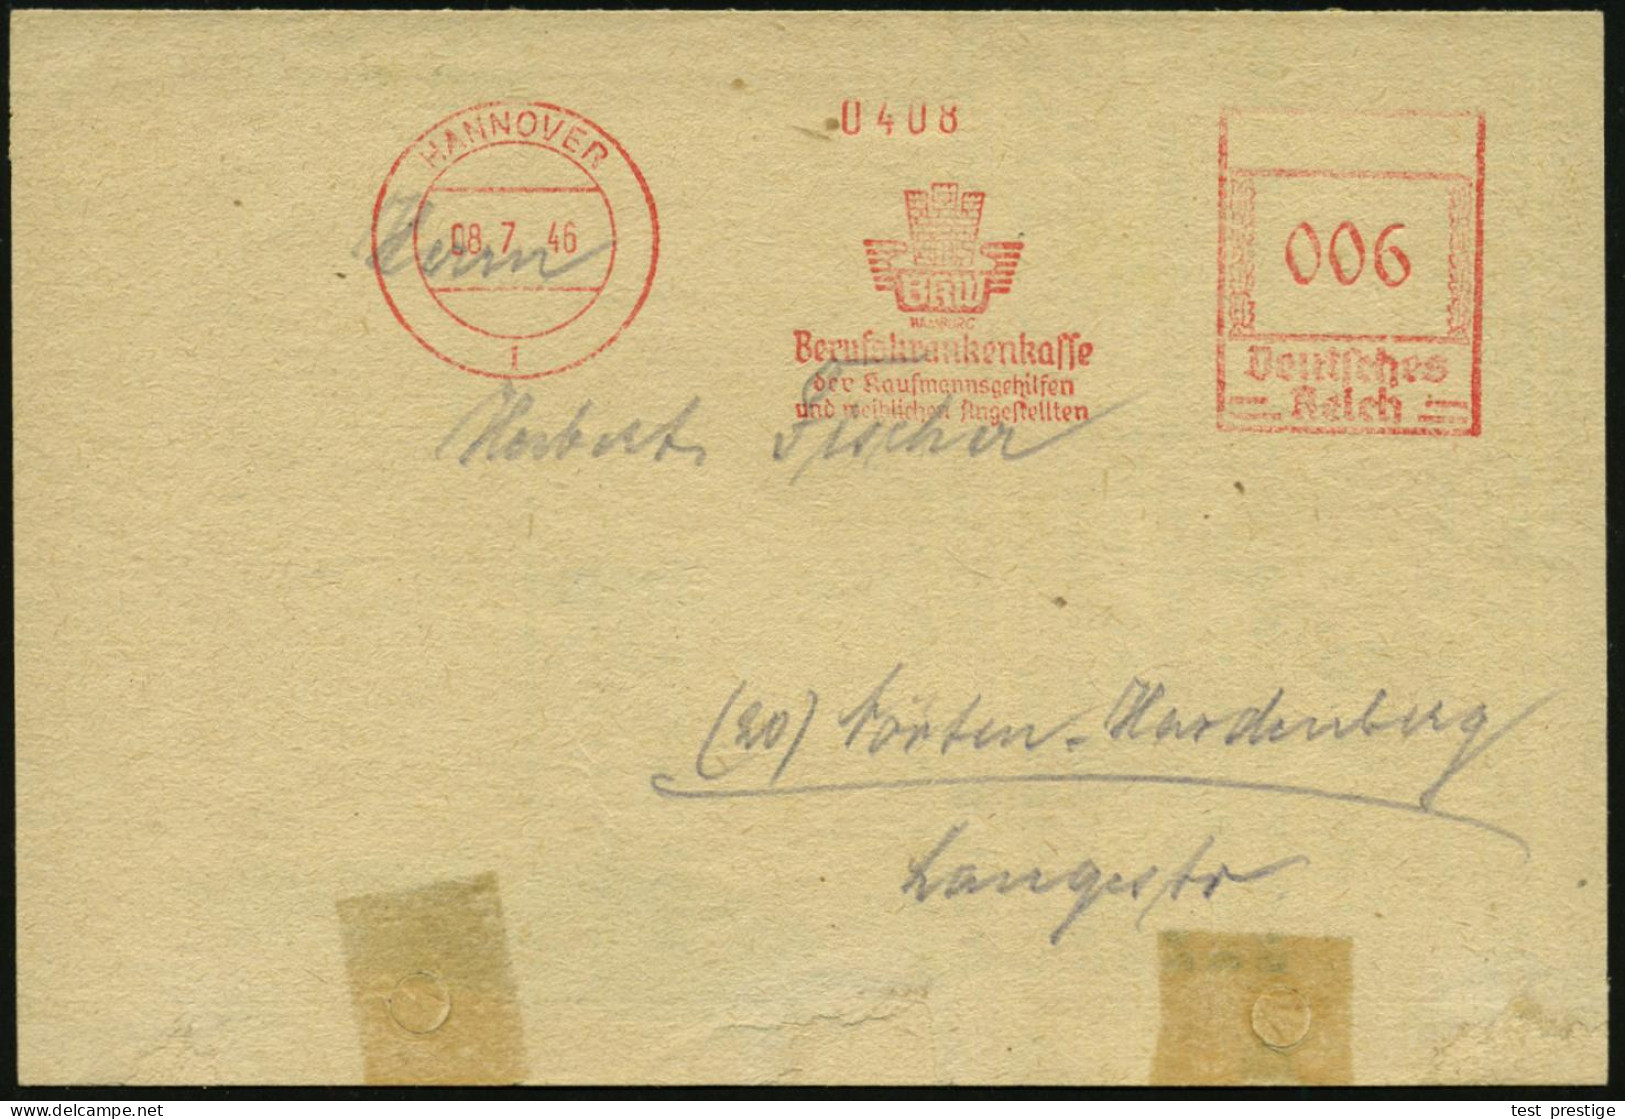 HANNOVER/ BKW/ HAMBURG/ Berufskrankenkasse/ Der Kaufmannsgehilfen/ U.weiblichen Angestellten 1946 (8.7.) Seltener, Aptie - Other